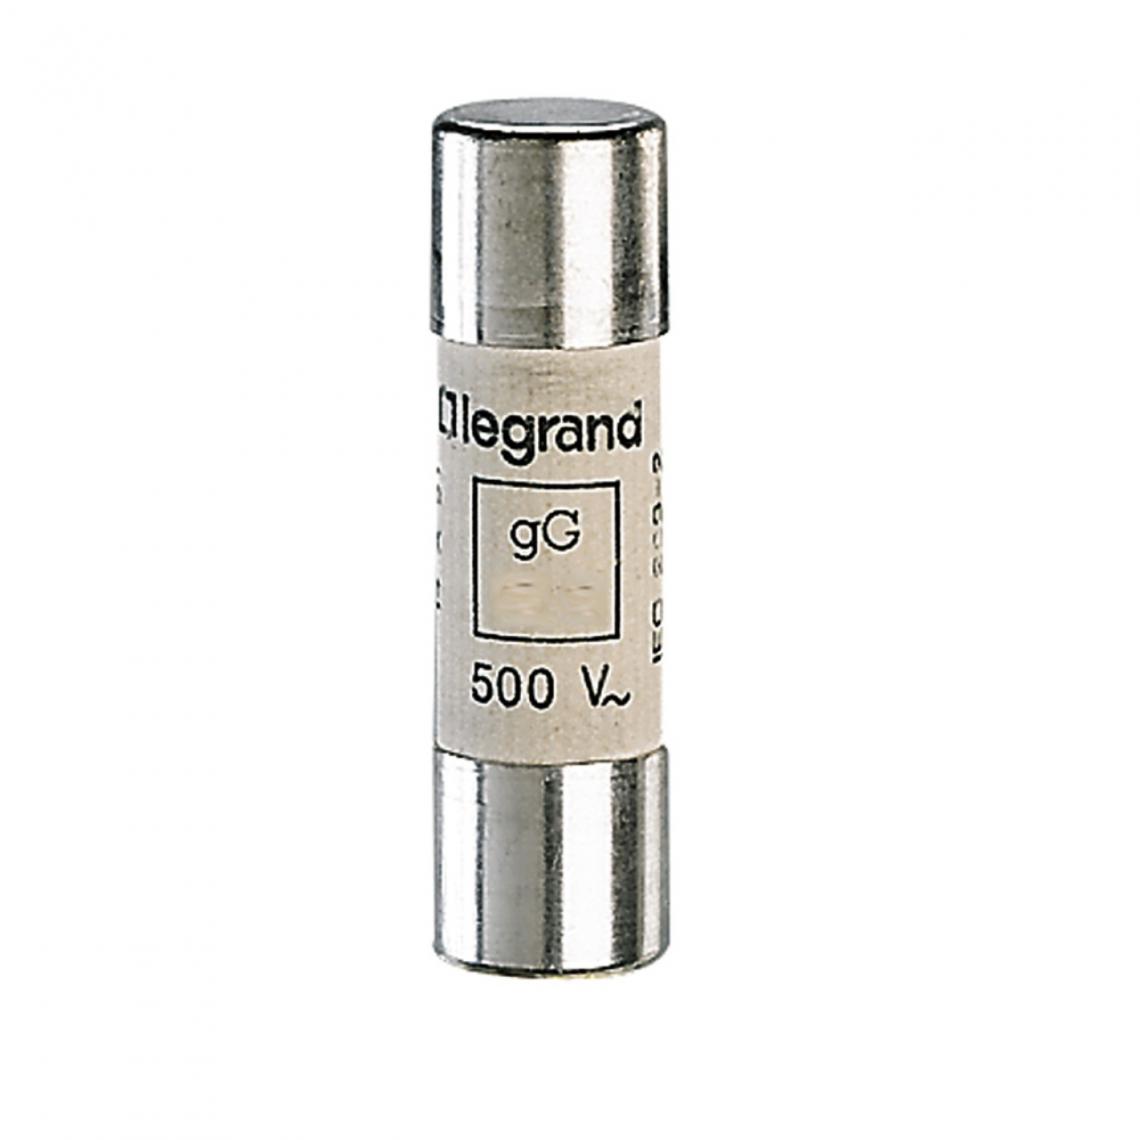 Legrand - fusible cartouche cylindrique - 14 x 51 - 50 ampères - type gg hpc - sans percuteur - Fusibles